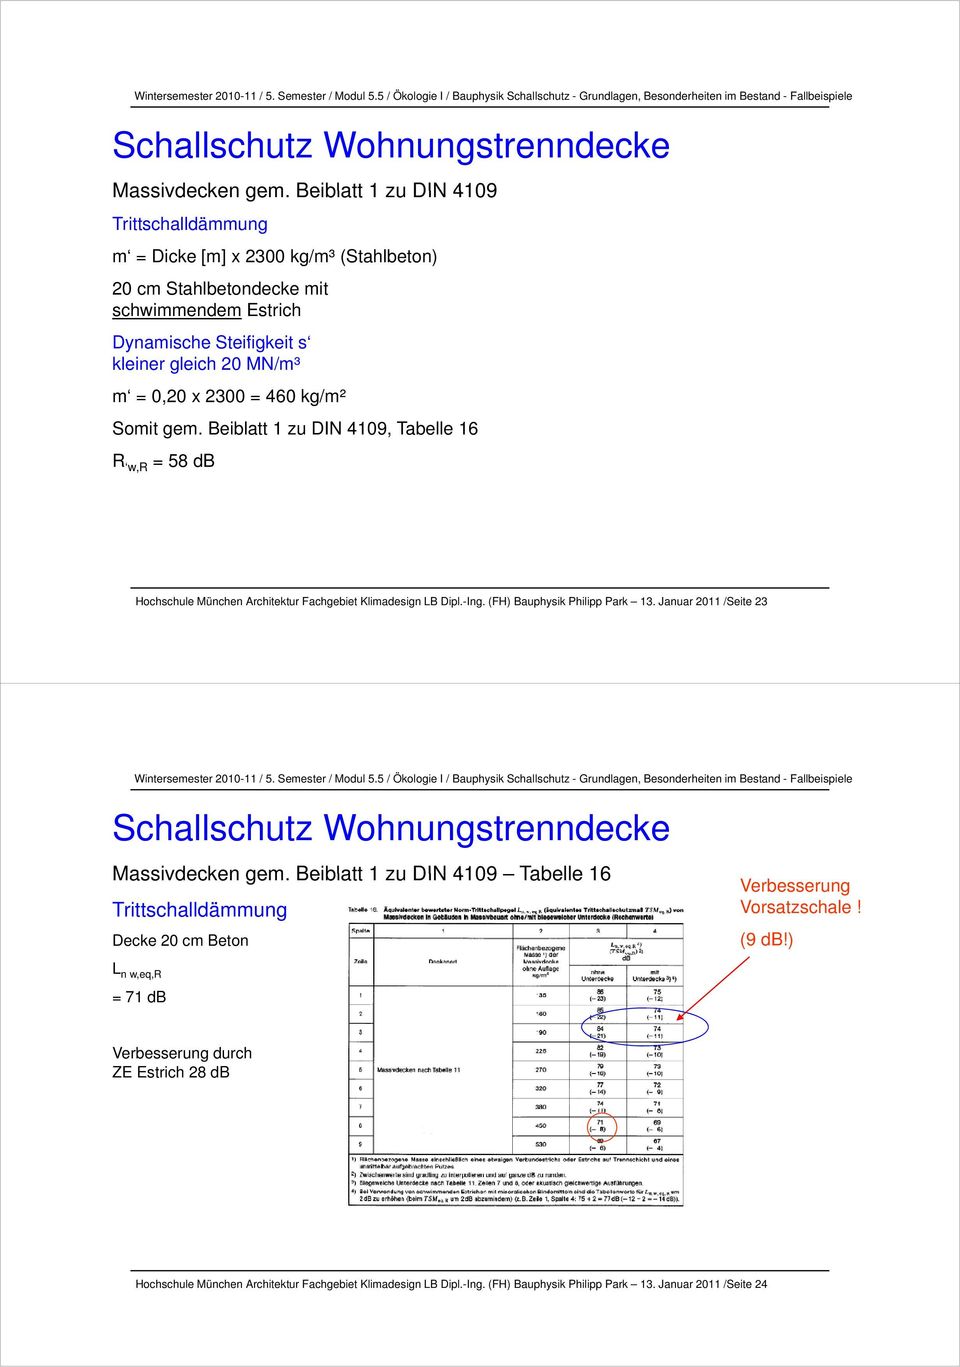 2300 = 460 kg/m² Somit gem. Beiblatt 1 zu DIN 4109, Tabelle 16 R w,r = 58 db Hochschule München Architektur Fachgebiet Klimadesign LB Dipl.-Ing. (FH) Bauphysik Philipp Park 13.